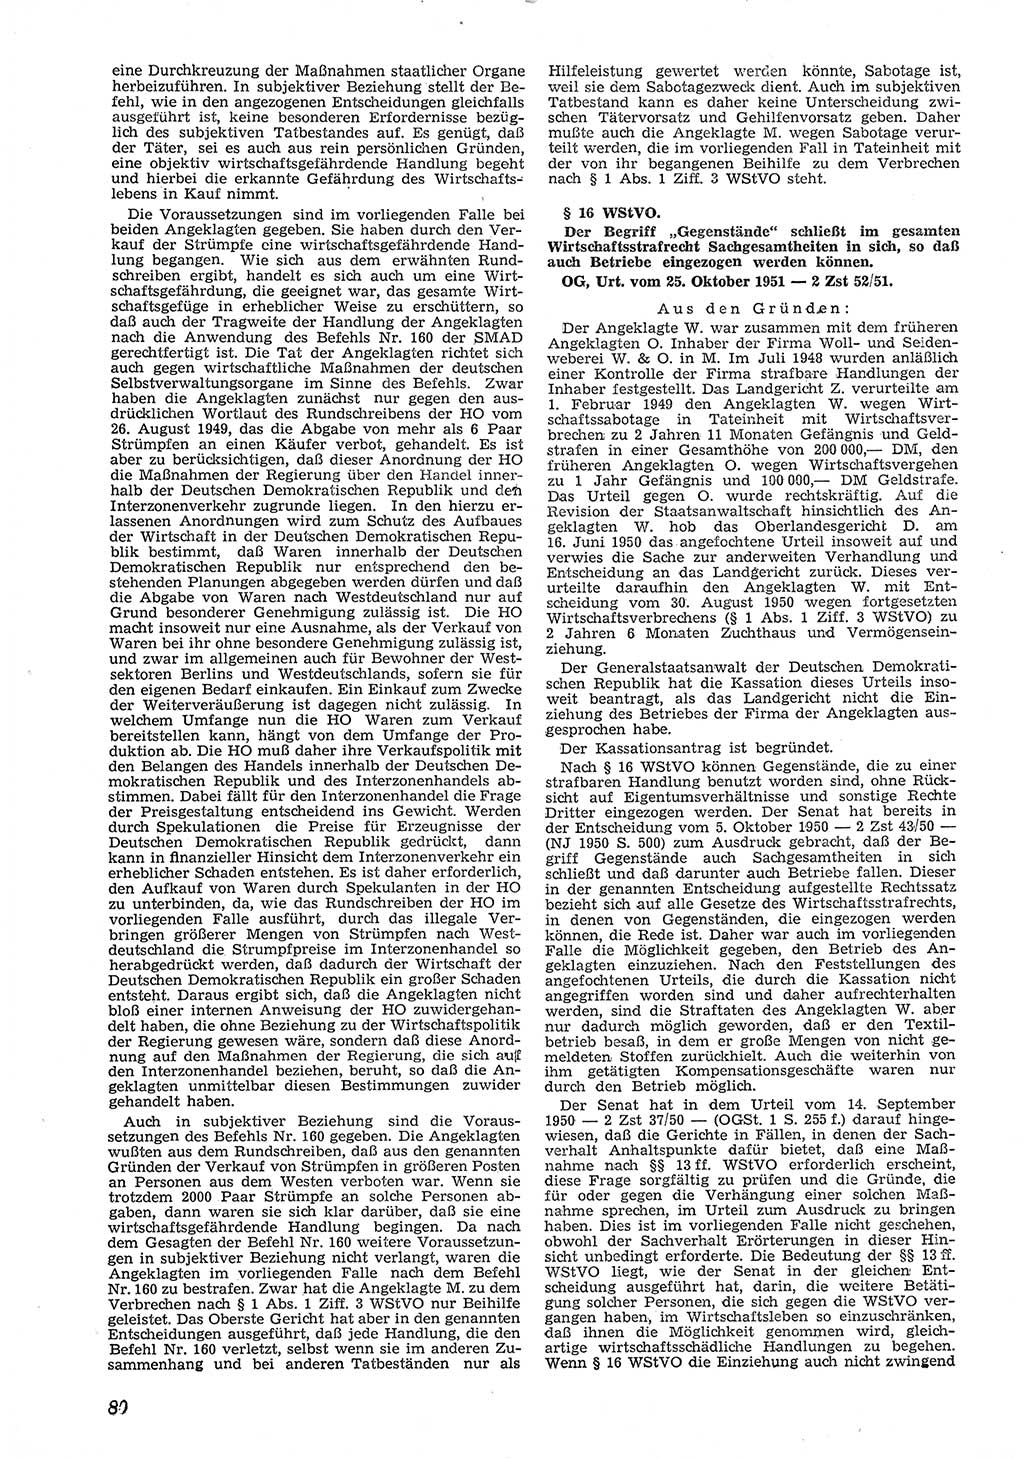 Neue Justiz (NJ), Zeitschrift für Recht und Rechtswissenschaft [Deutsche Demokratische Republik (DDR)], 6. Jahrgang 1952, Seite 80 (NJ DDR 1952, S. 80)